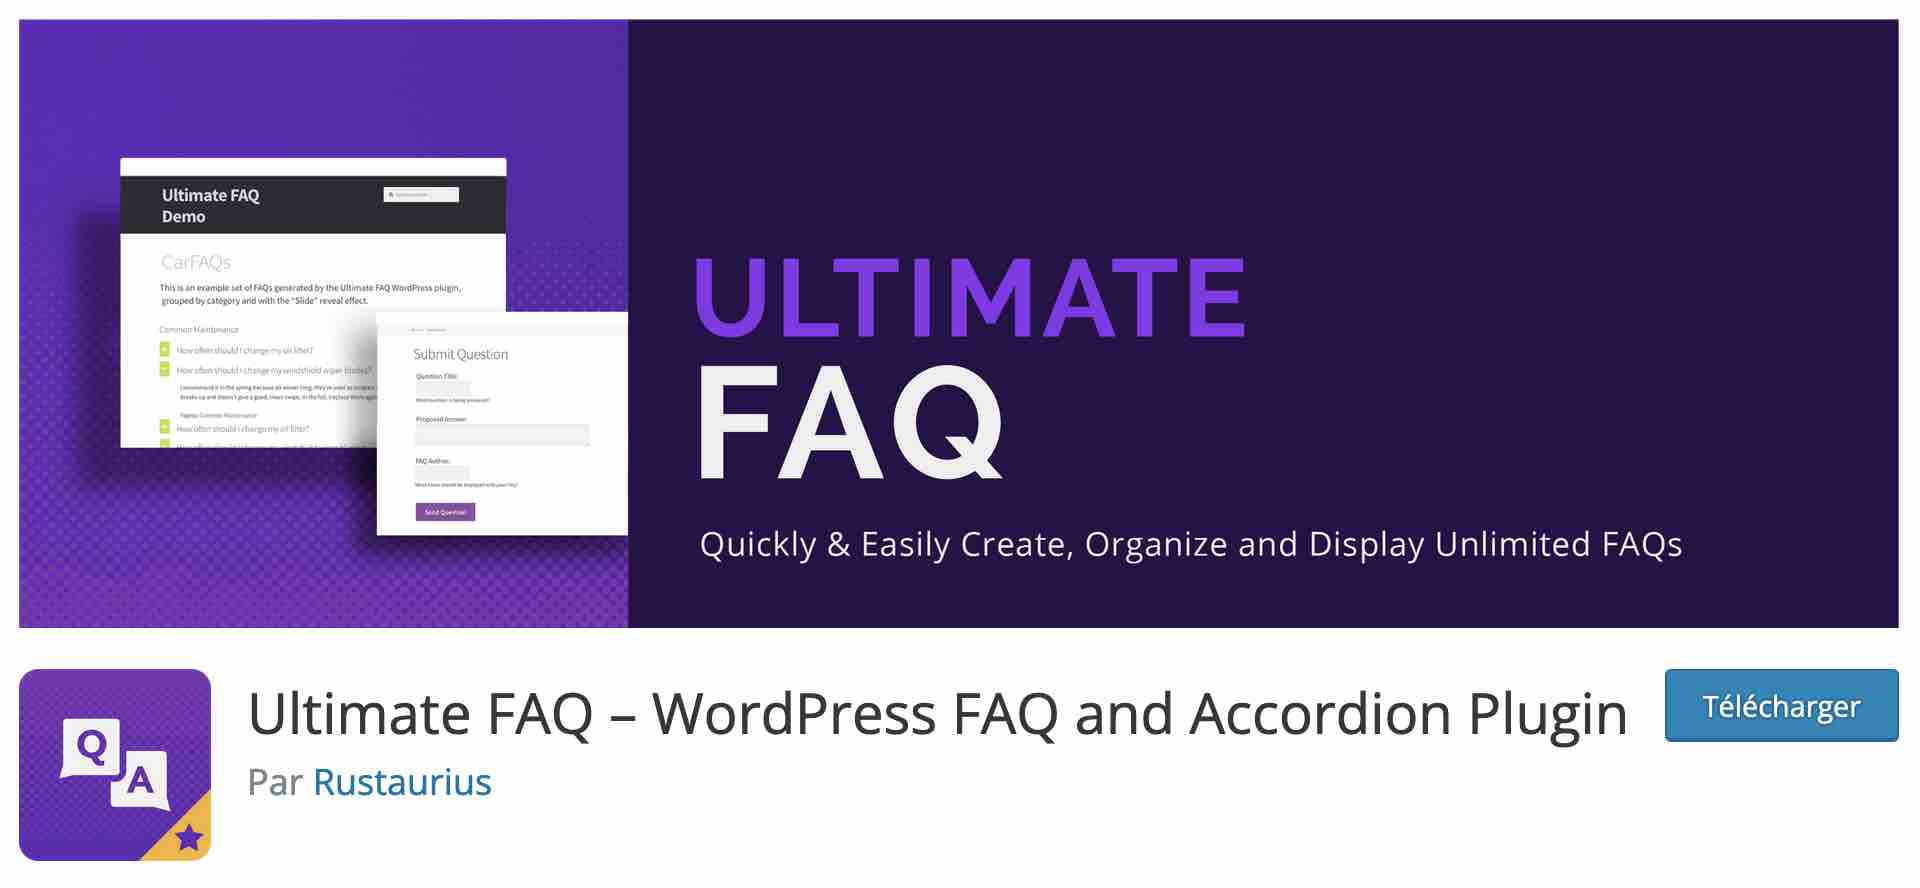 The Ultimate FAQ plugin for WordPress.